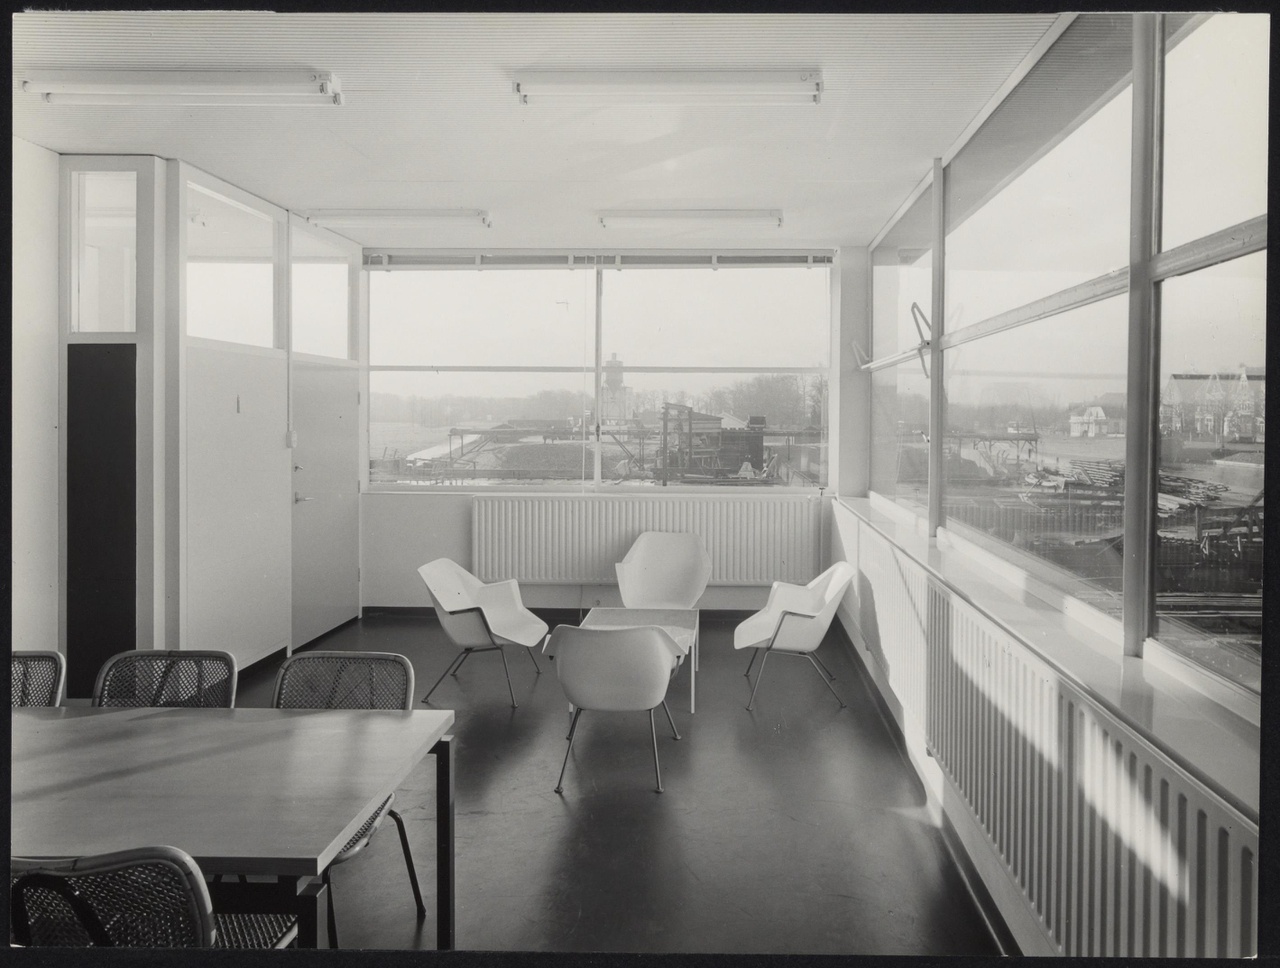 Afbeelding van kantoor Schrale Beton, ca.1958, interieur met zithoek